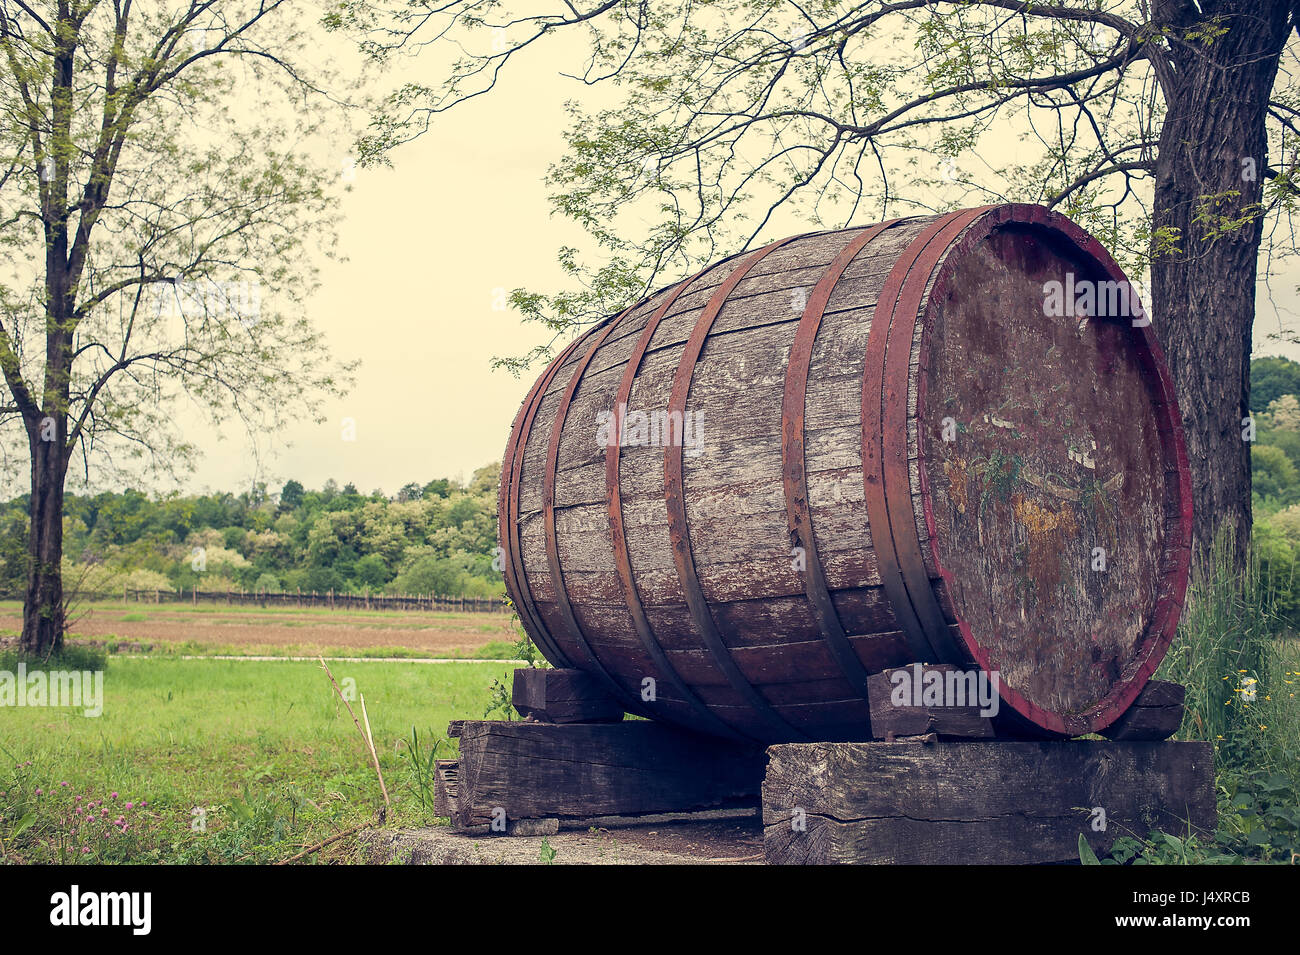 Vieux baril indiquant le début d'une zone de production de vin de raisin. Photo dans le style vintage. Banque D'Images